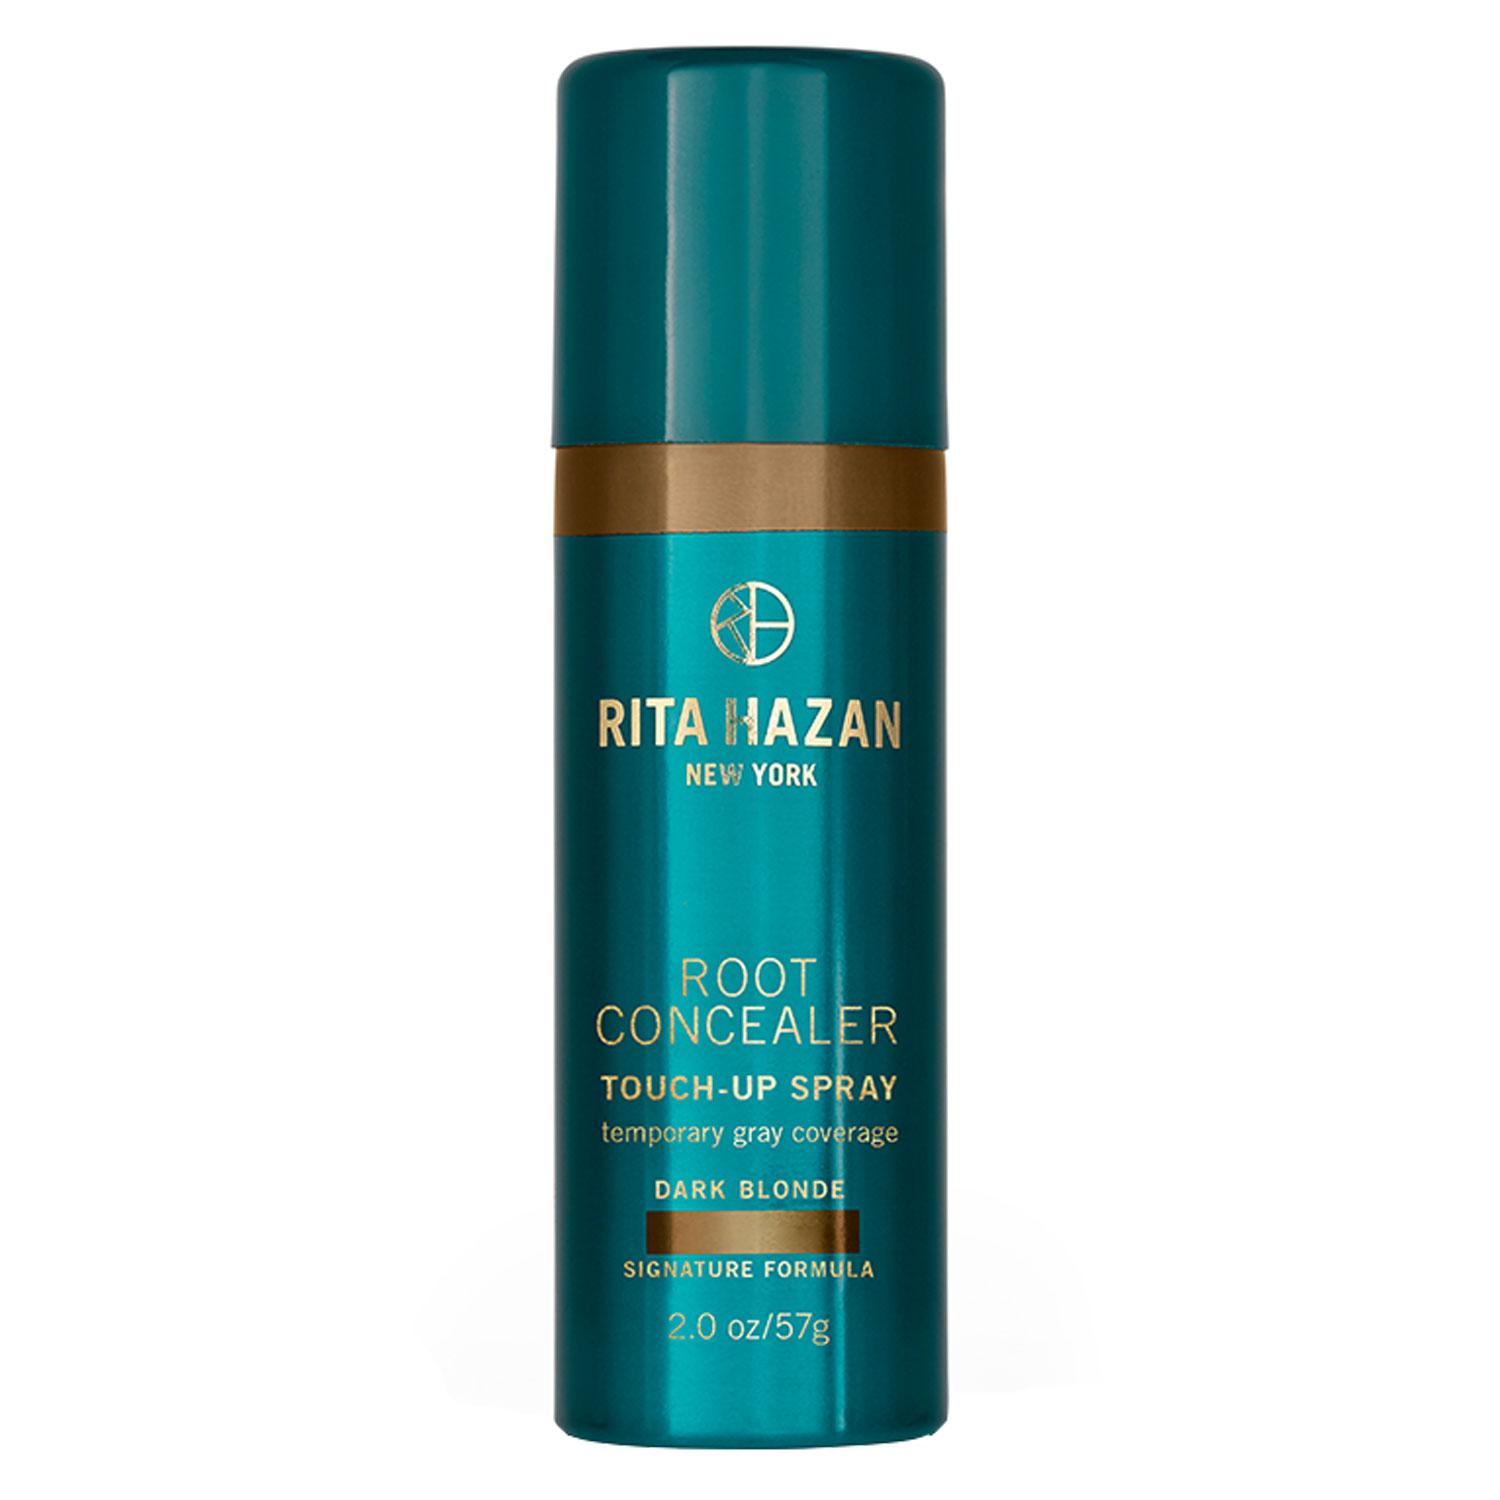 Rita Hazan New York - Root Concealer Touch-Up Spray Dark Blonde